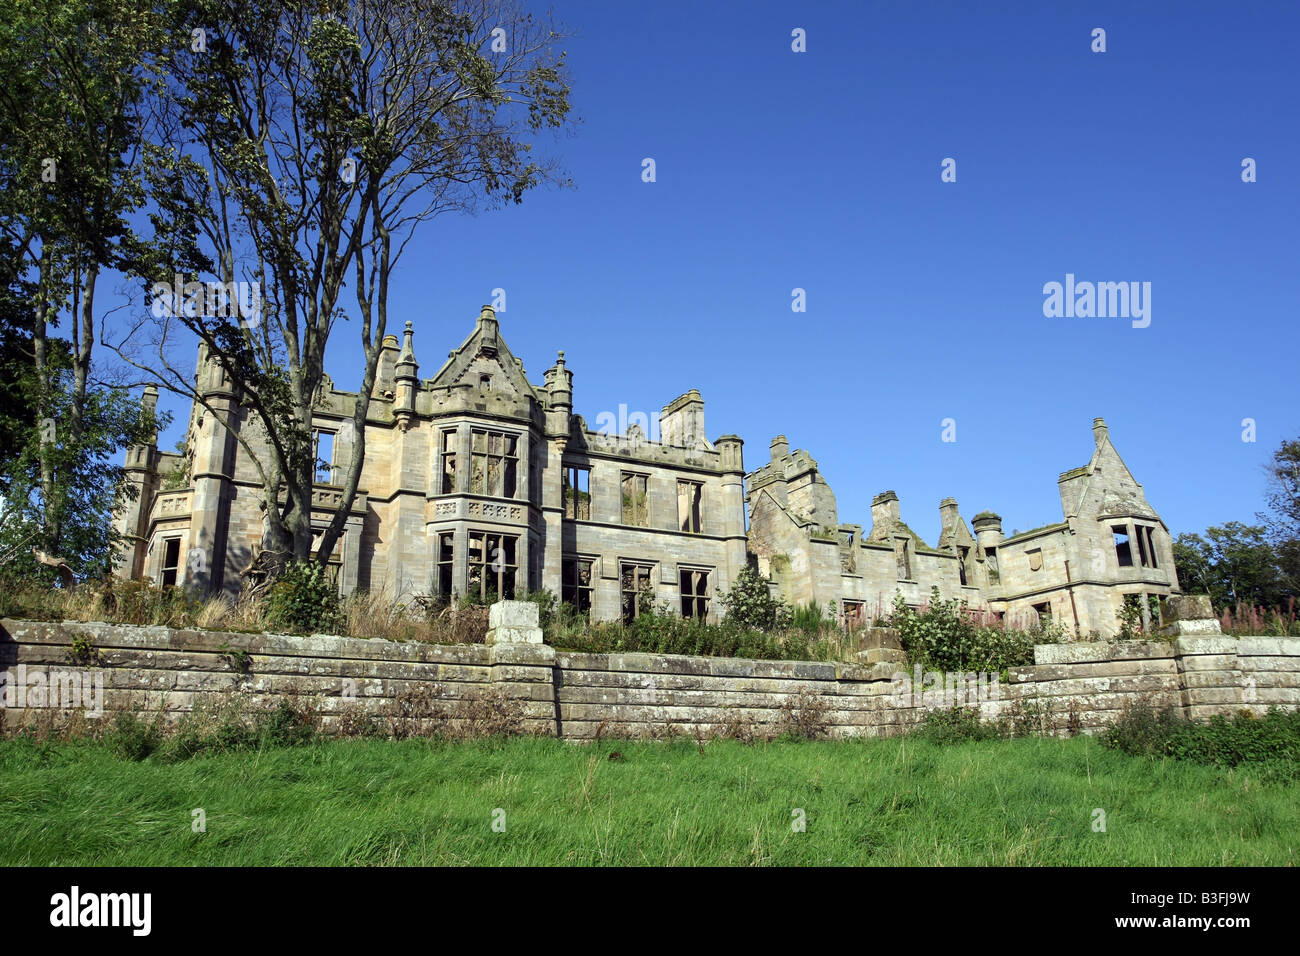 Ruinen von Ury House in der Nähe von Stonehaven in Aberdeenshire, Schottland, ist der vorgeschlagene Standort für den Jack Nicklaus-Golfplatz. Stockfoto